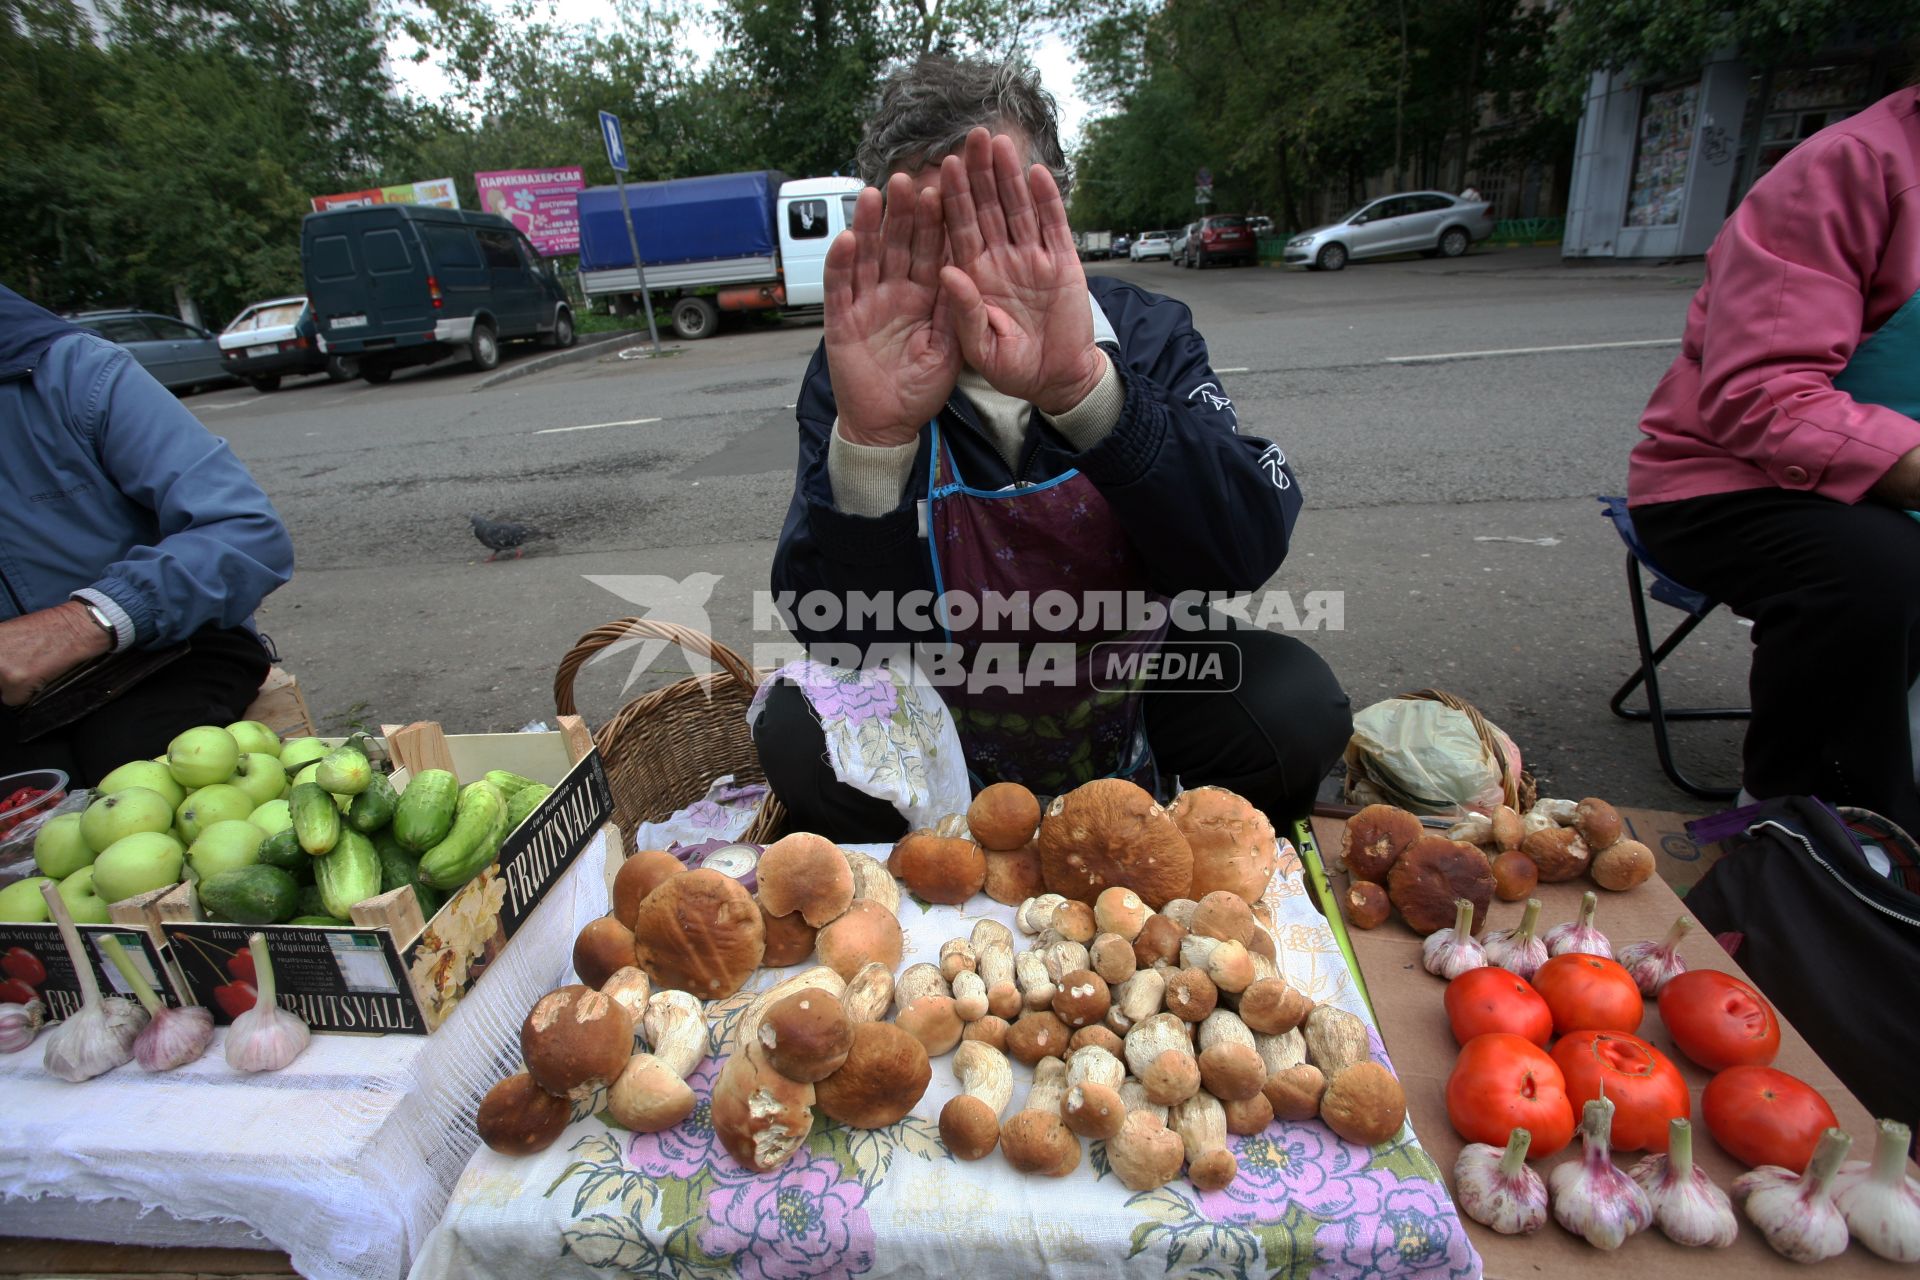 Продажа грибов.. На снимке: торговец закрывает лицо руками.